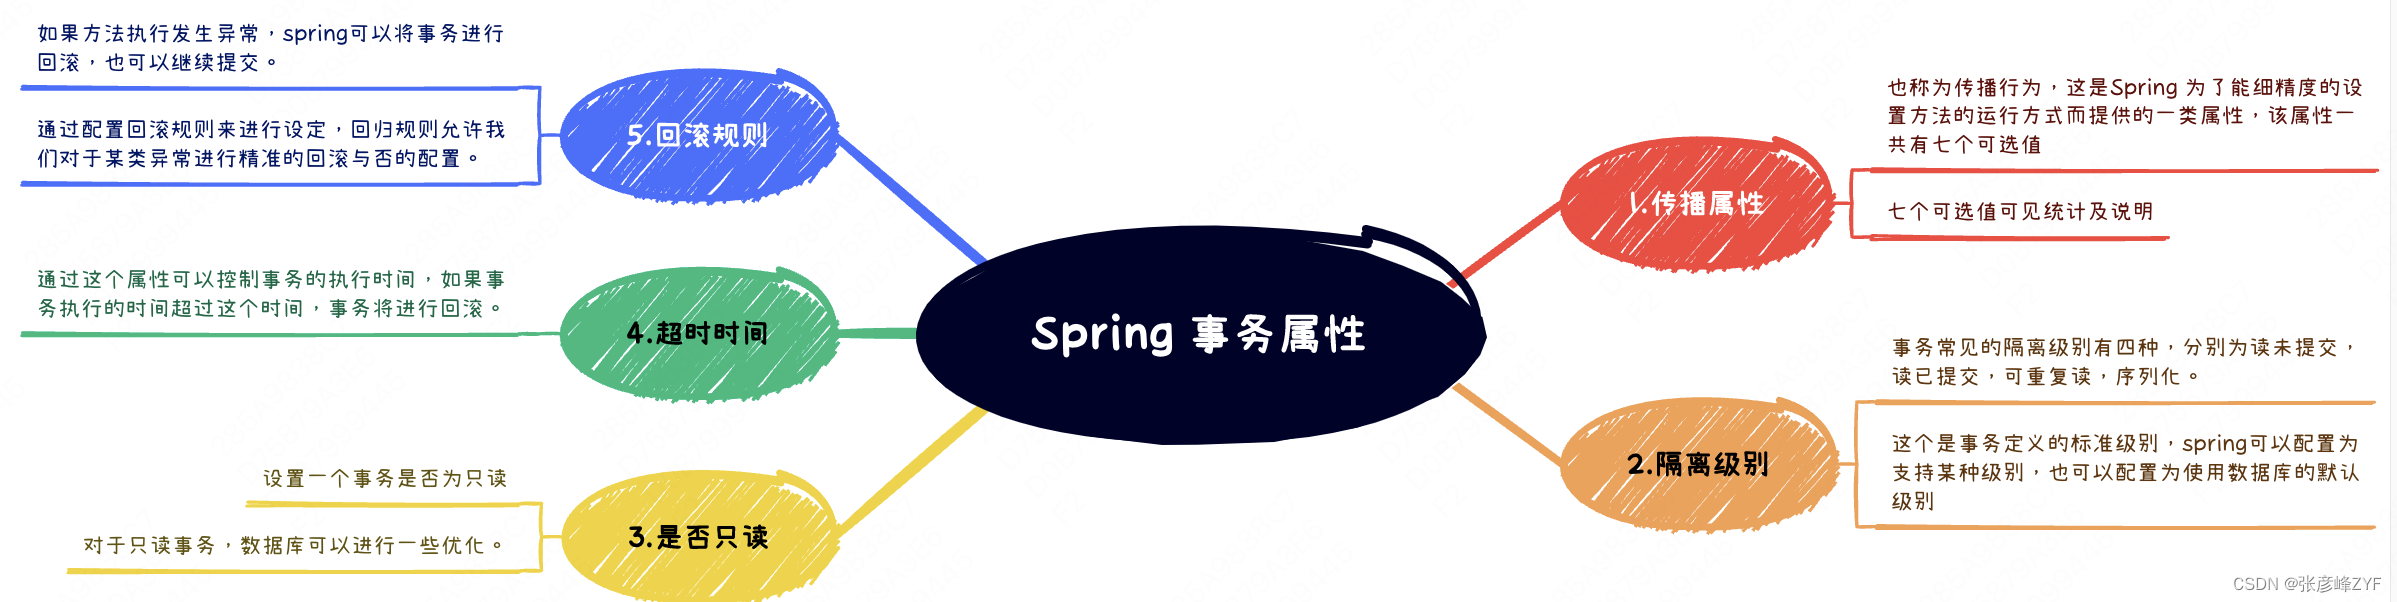 分析Spring事务管理原理及应用